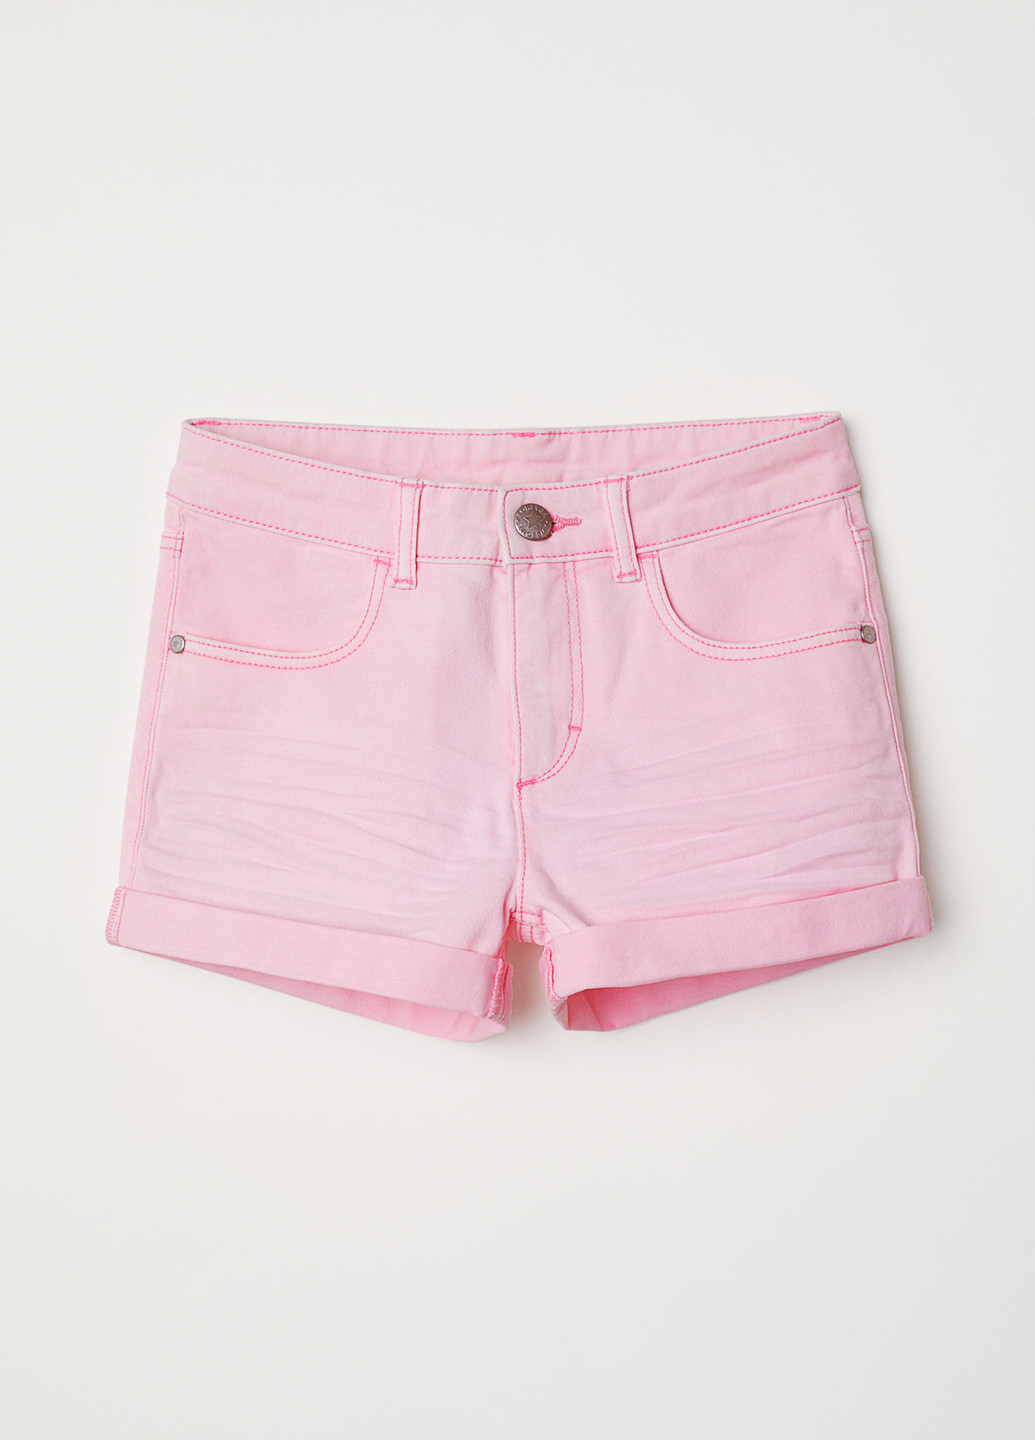 Шорты H&M однотонные розовые джинсовые